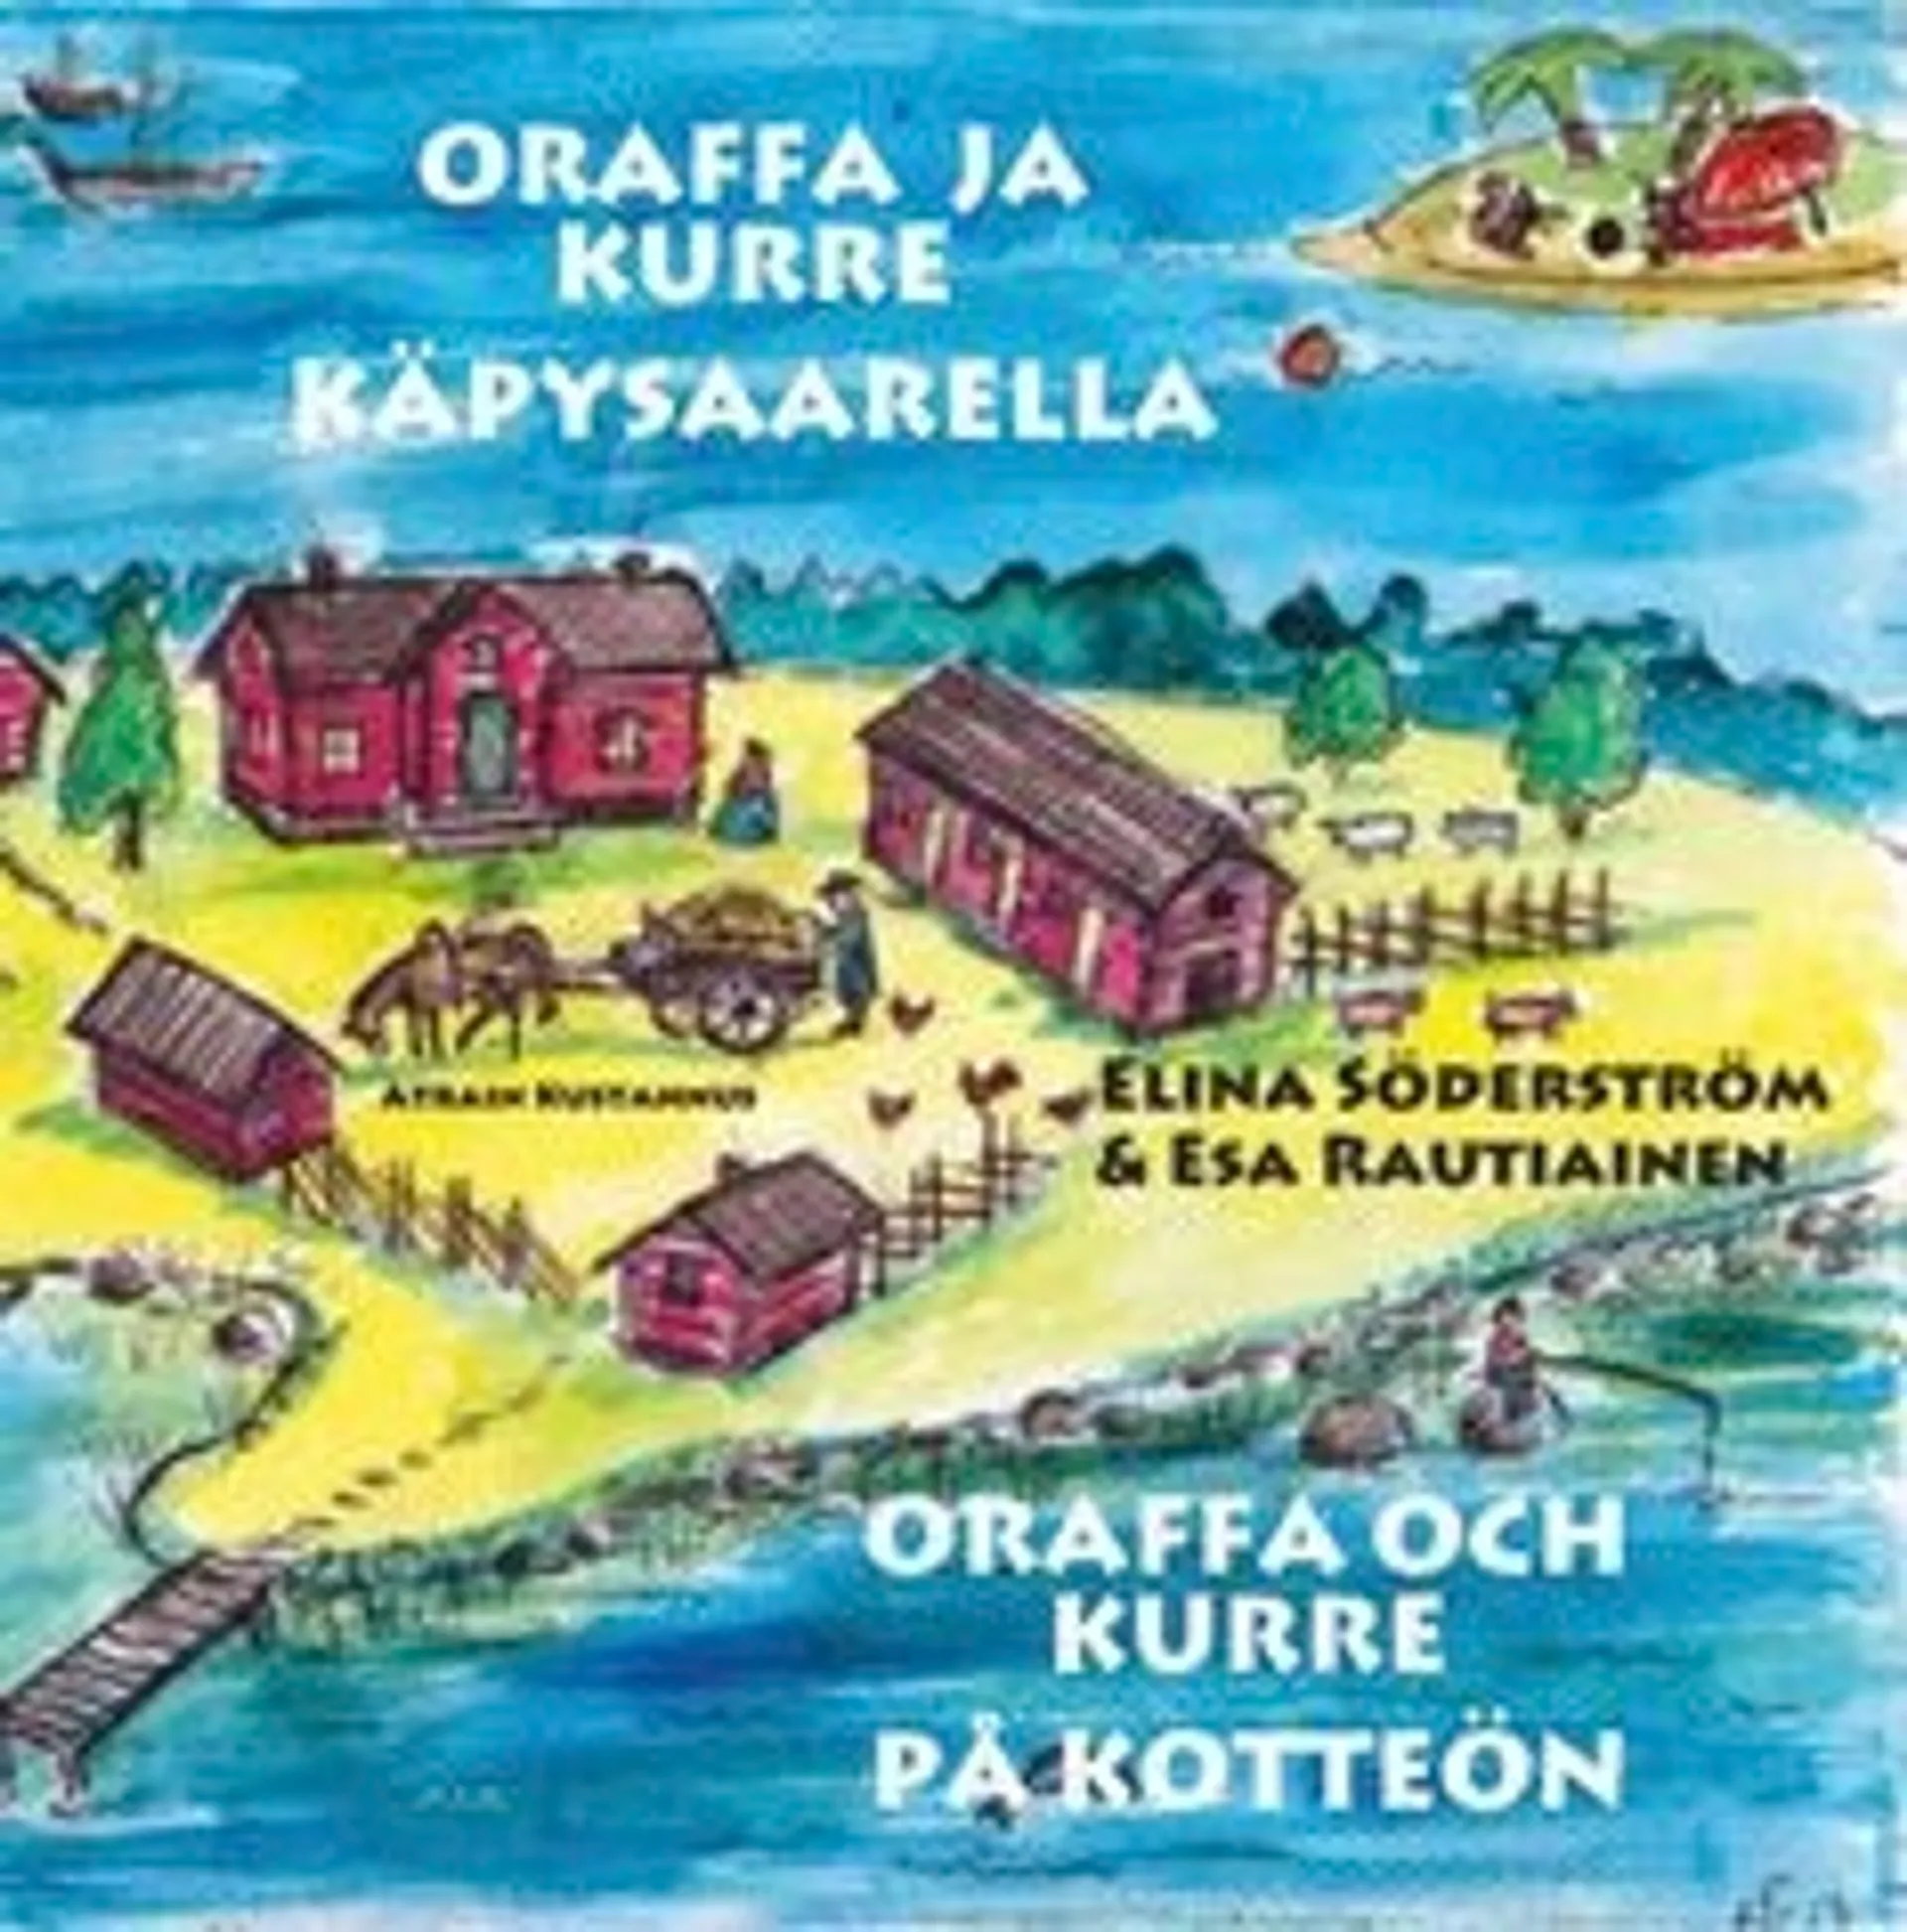 Rautiainen, Oraffa ja Kurre Käpysaarella - Oraffa och Kurre på Kotteön